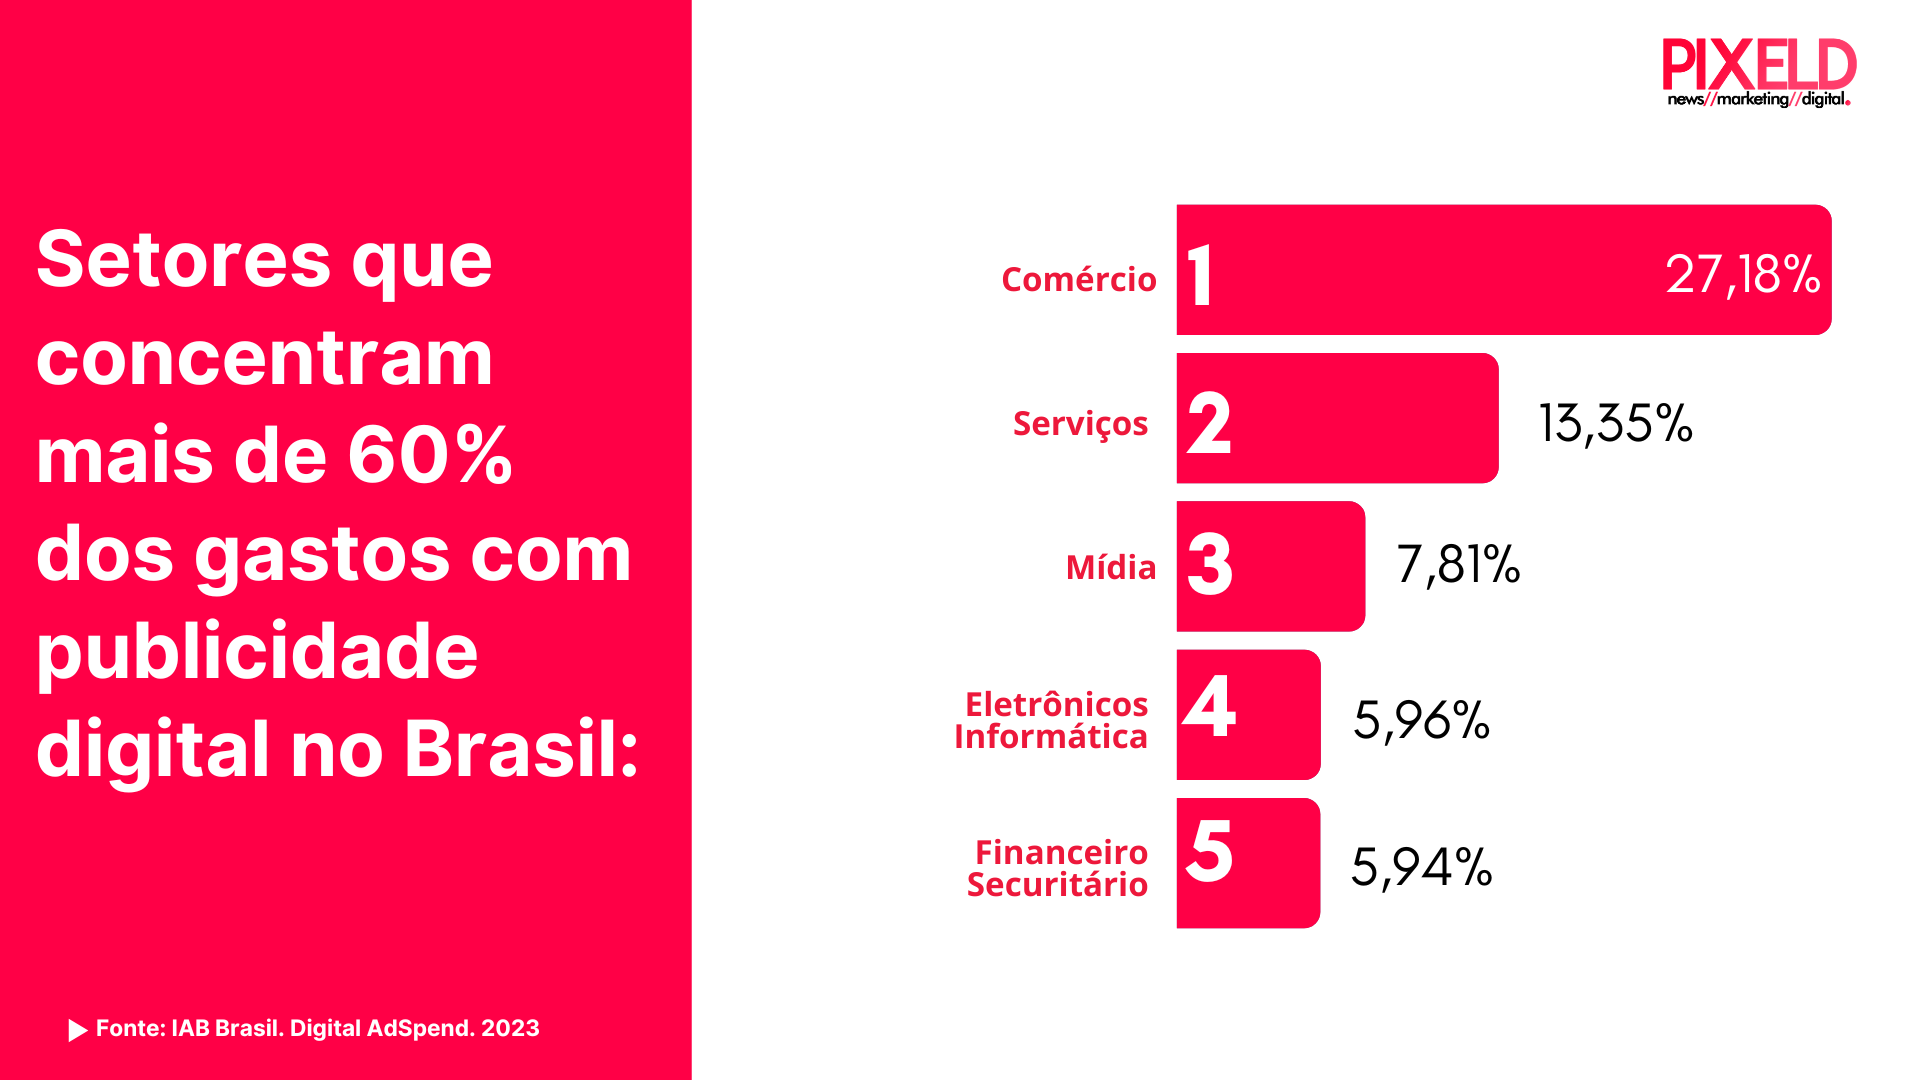 Setores que concentram mais de 60% dos gastos com publicidade digital no Brasil